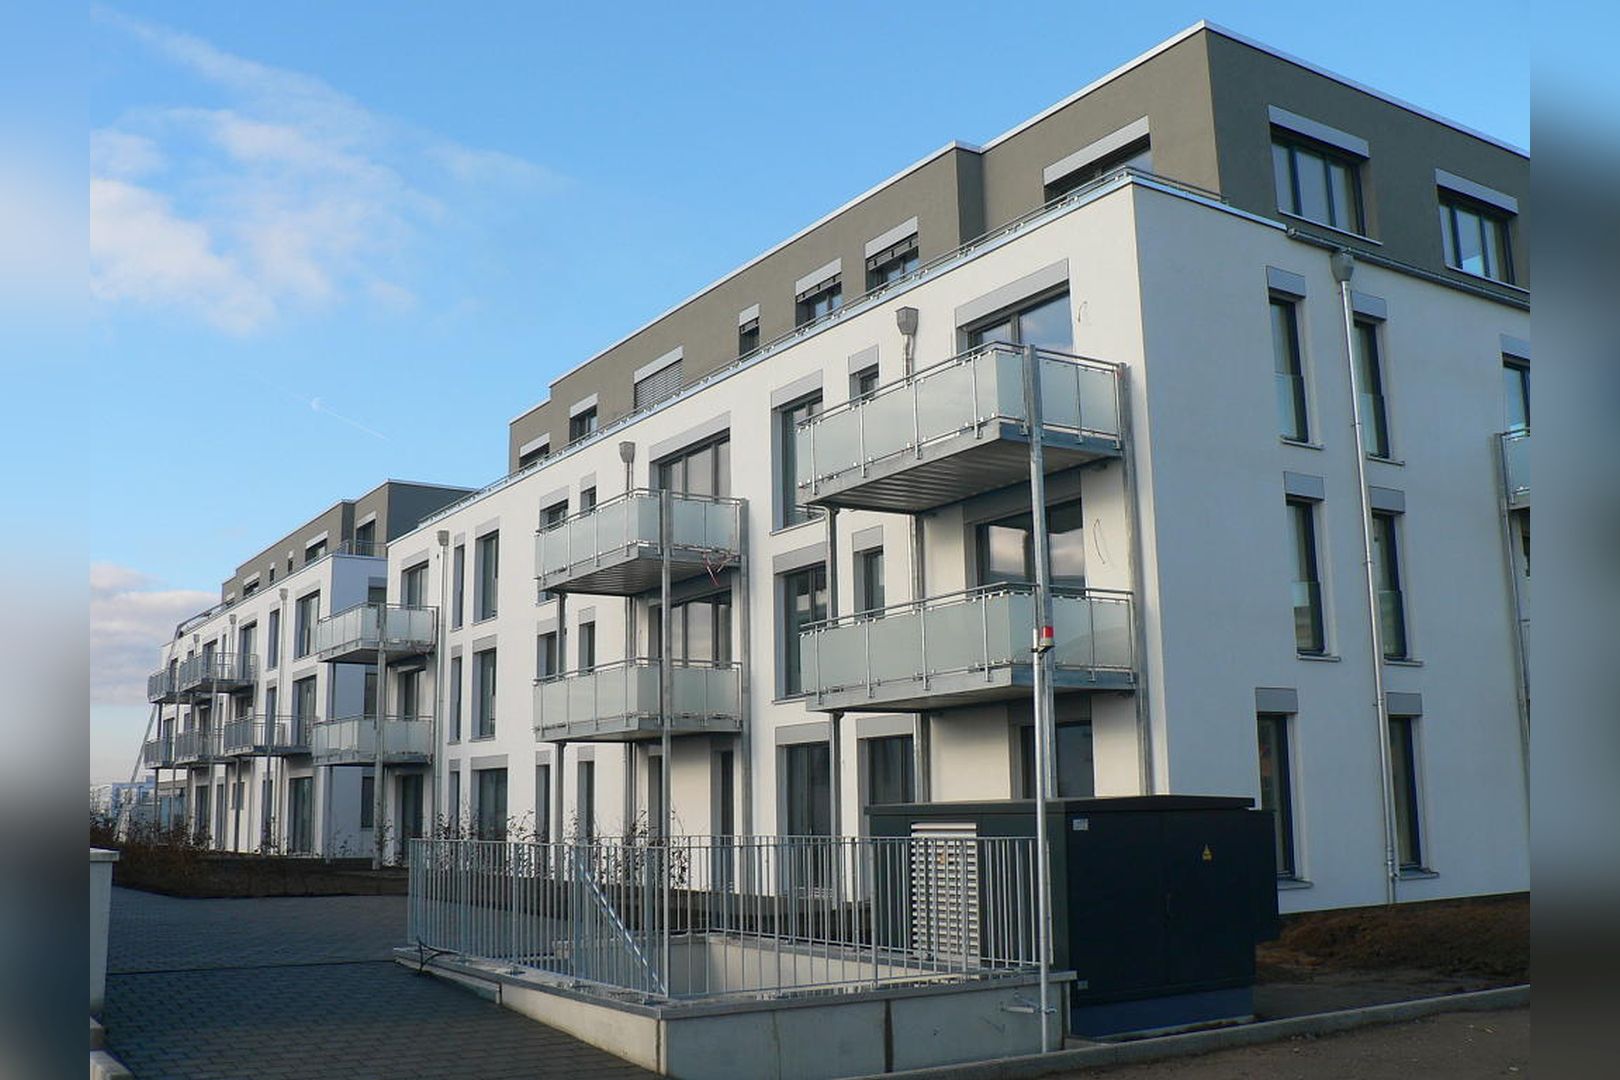 Immobilie Nr.Köln 001.3 - 2-Raum-Wohnung HAUS 1, mit Terrasse u. Gartennutzung, mit Aufzug im Haus! - Bild 6.jpg